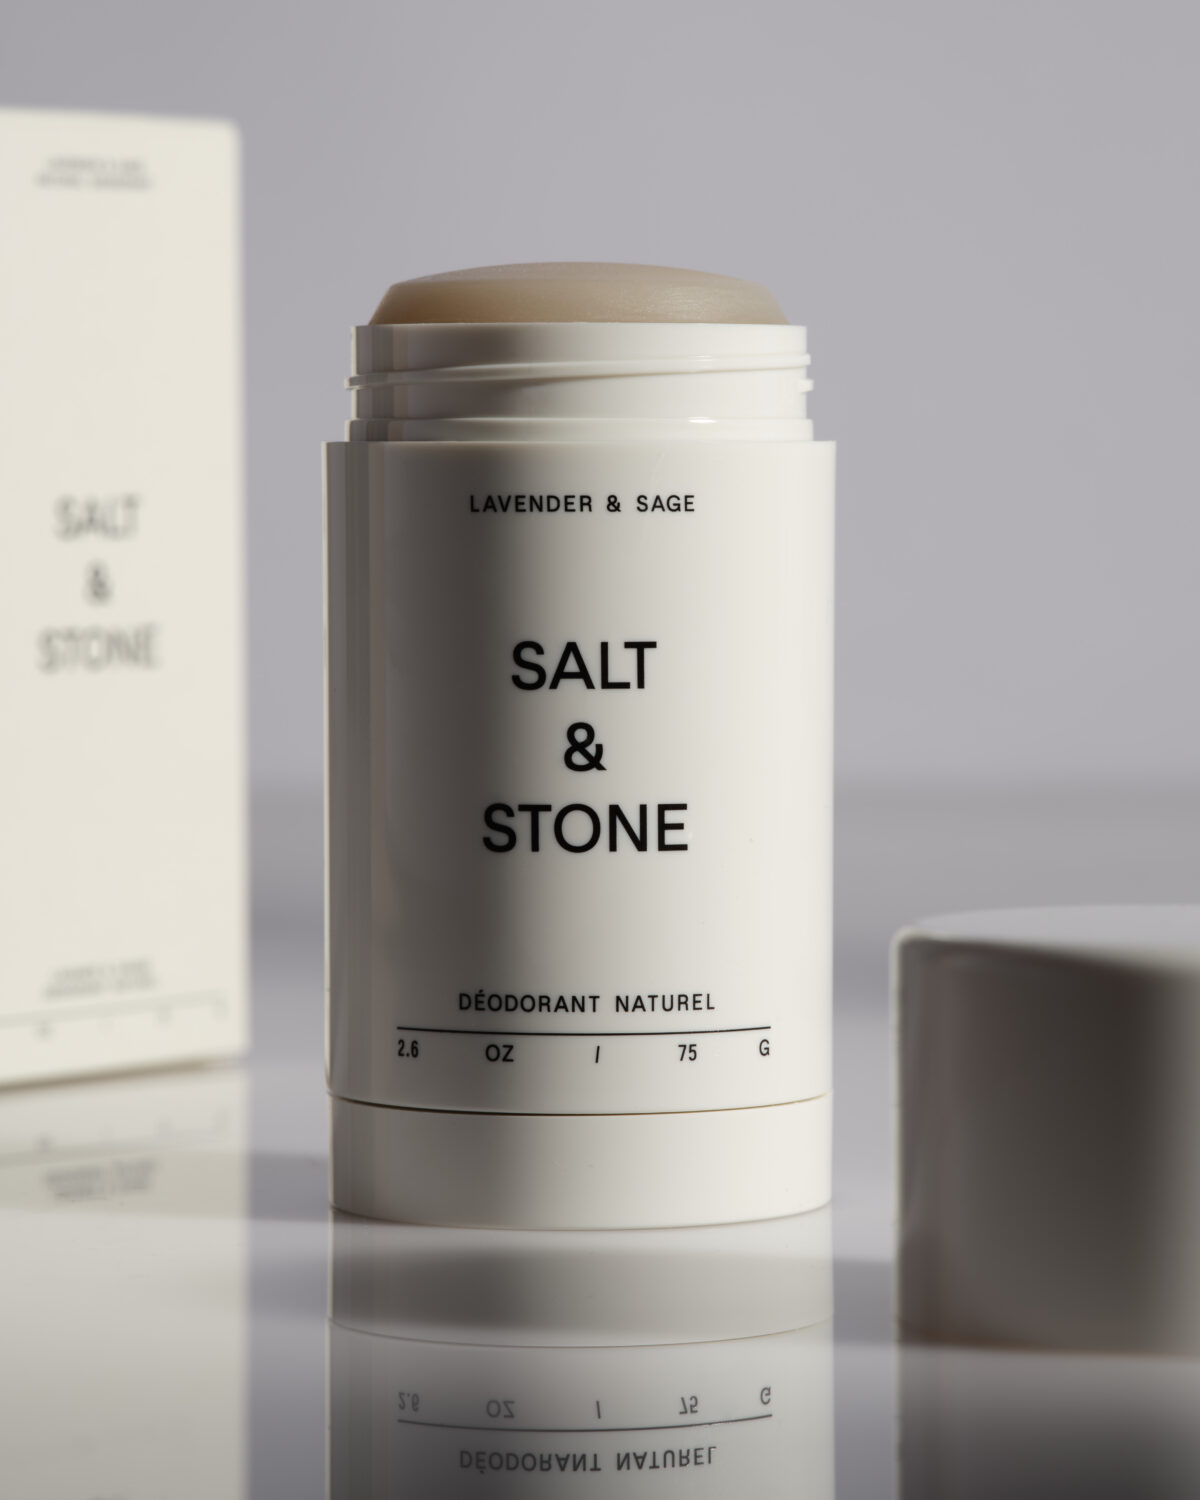 Salt & Stone naturaalne deodorant, Lavender & Sage Hooldusvahendid ja kosmeetika - HellyK - Kvaliteetsed lasteriided, villariided, barefoot jalatsid